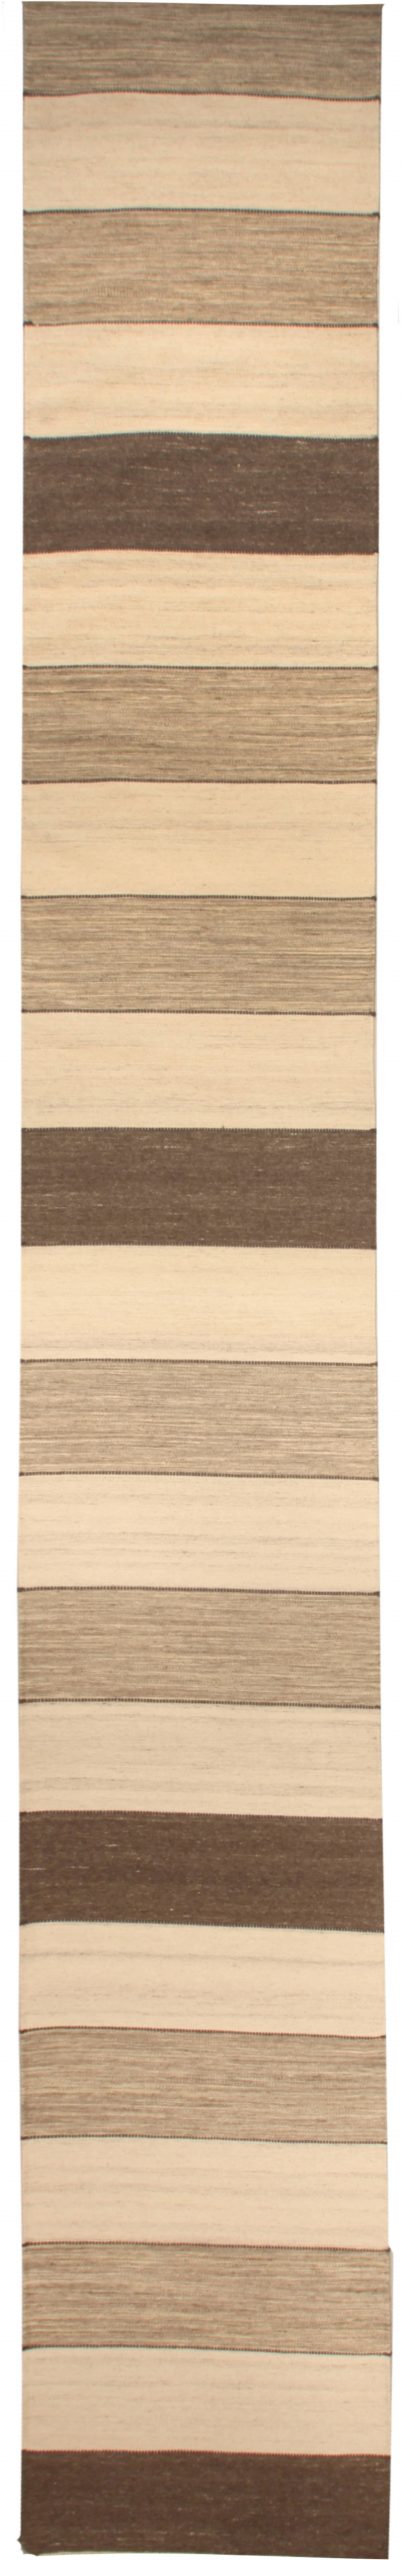 Doris Leslie Blau Collection Beige, Brown Striped Tulu Nadu Flat-Weave Runner N10932